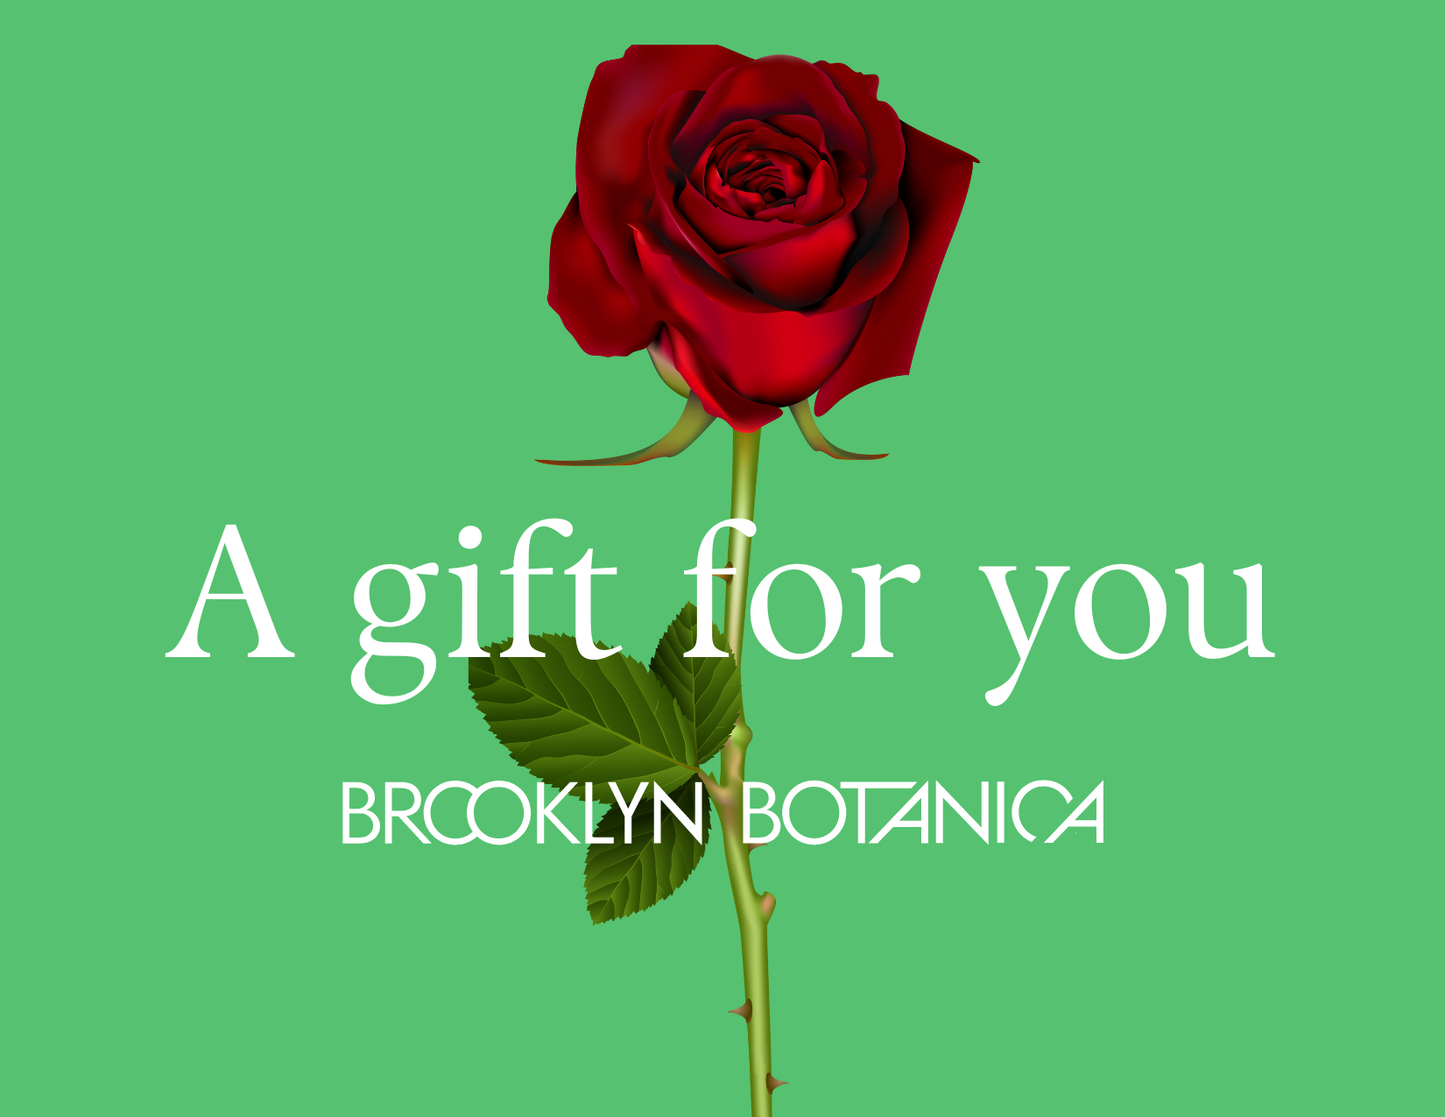 The Brooklyn Botanica Gift Card